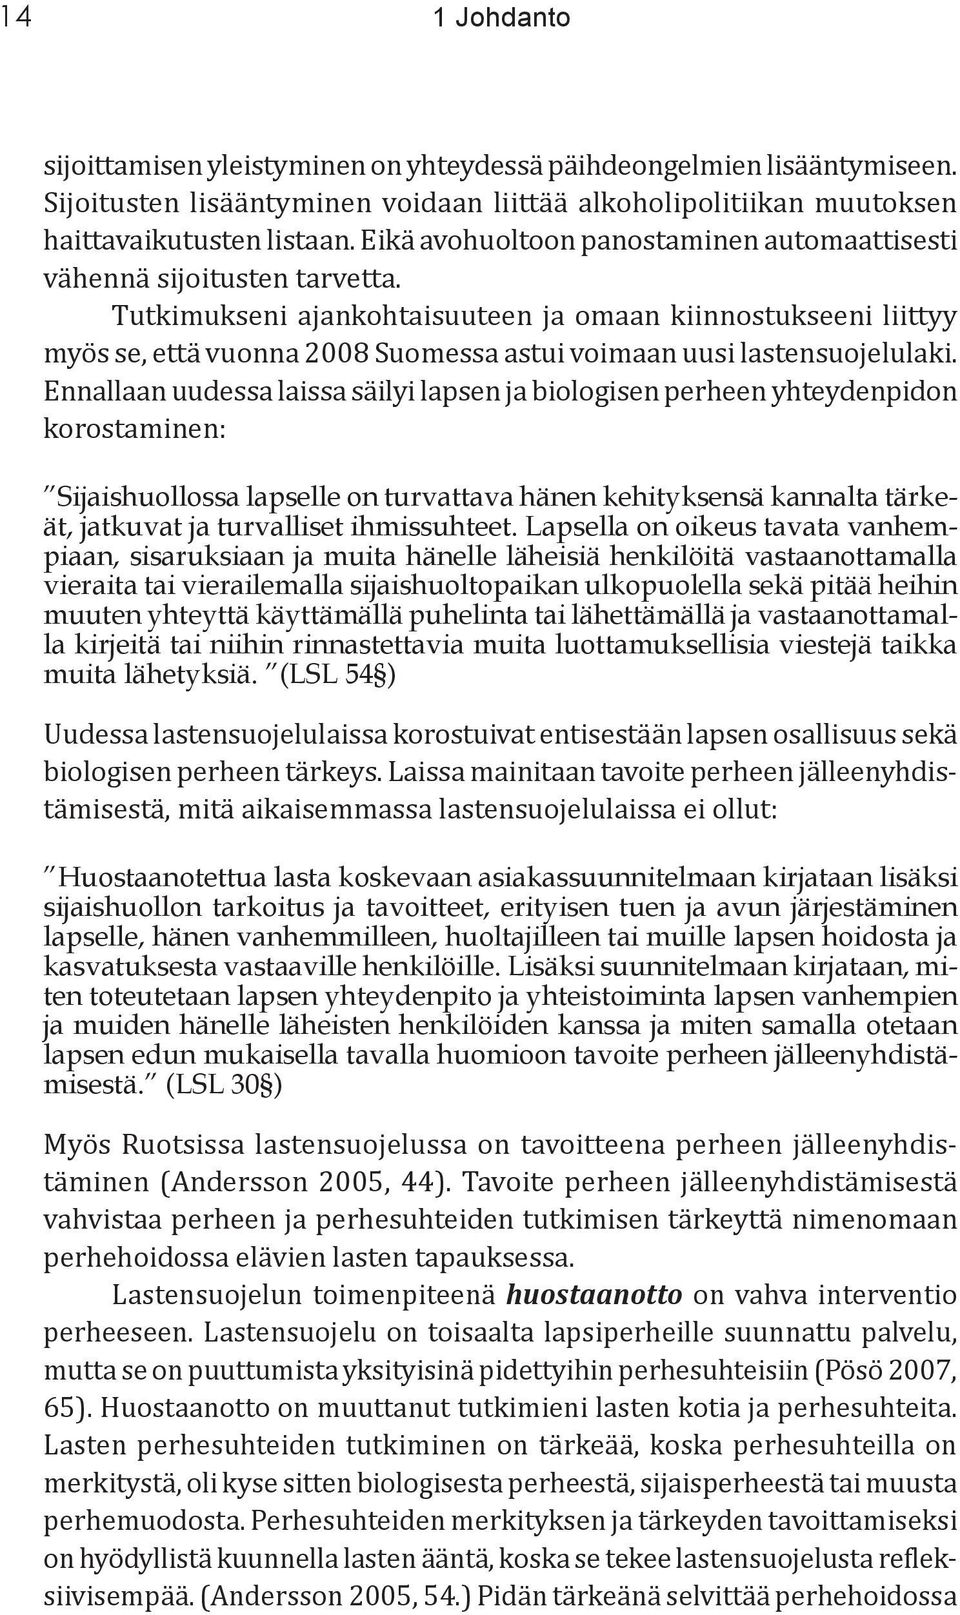 Tutkimukseni ajankohtaisuuteen ja omaan kiinnostukseeni liittyy myös se, että vuonna 2008 Suomessa astui voimaan uusi lastensuojelulaki.